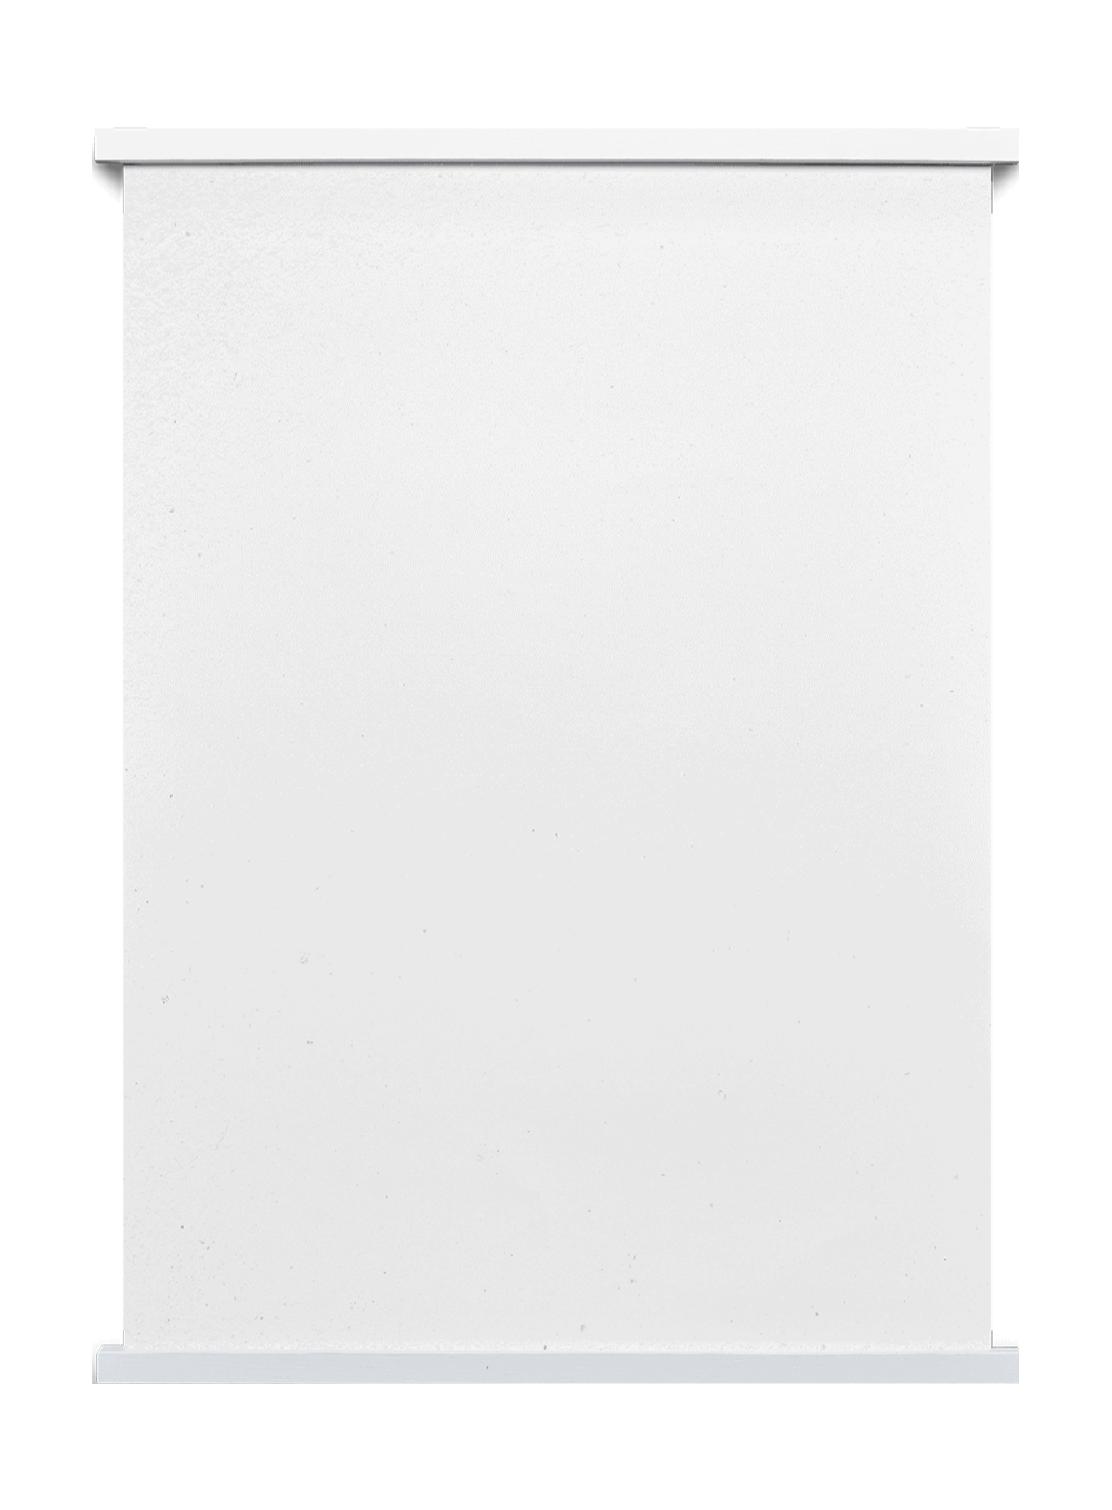 Paper Collective S tii cks 33 magnetiska affischstång, vit